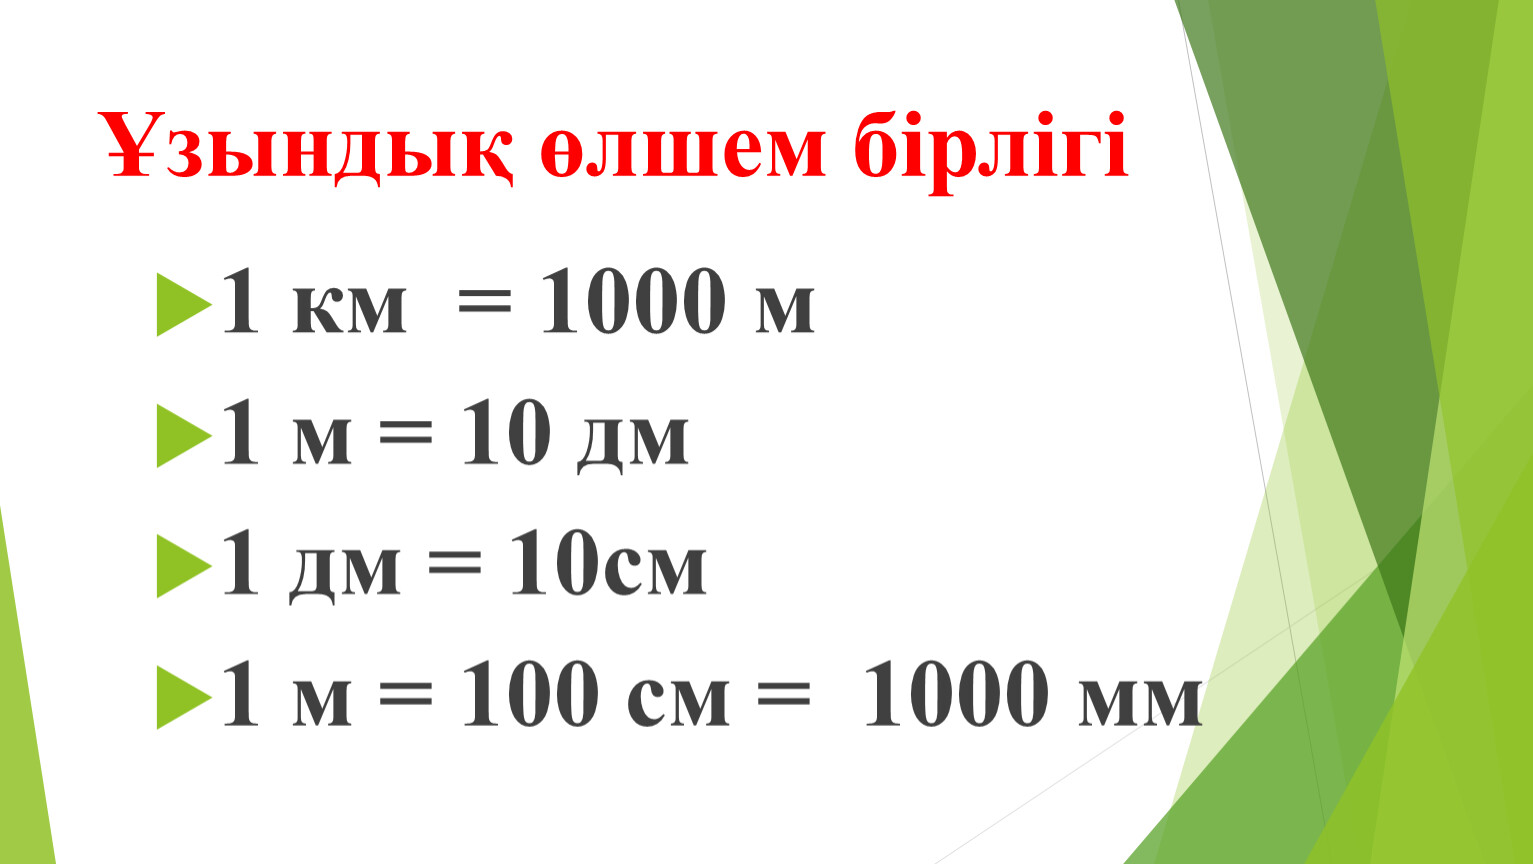 162 г в кг. 1 М = 10 дм 1 м = 100 см 1 дм см. 1 М = 10 дм, 1дм= 10 см, 1 м= 100 см. 1000 Мм = 100 см = 1 м. 1 Км=1000м 1м=100см 1м=10дм 1дм=10см 1см=10мм 1дм=1000мм.